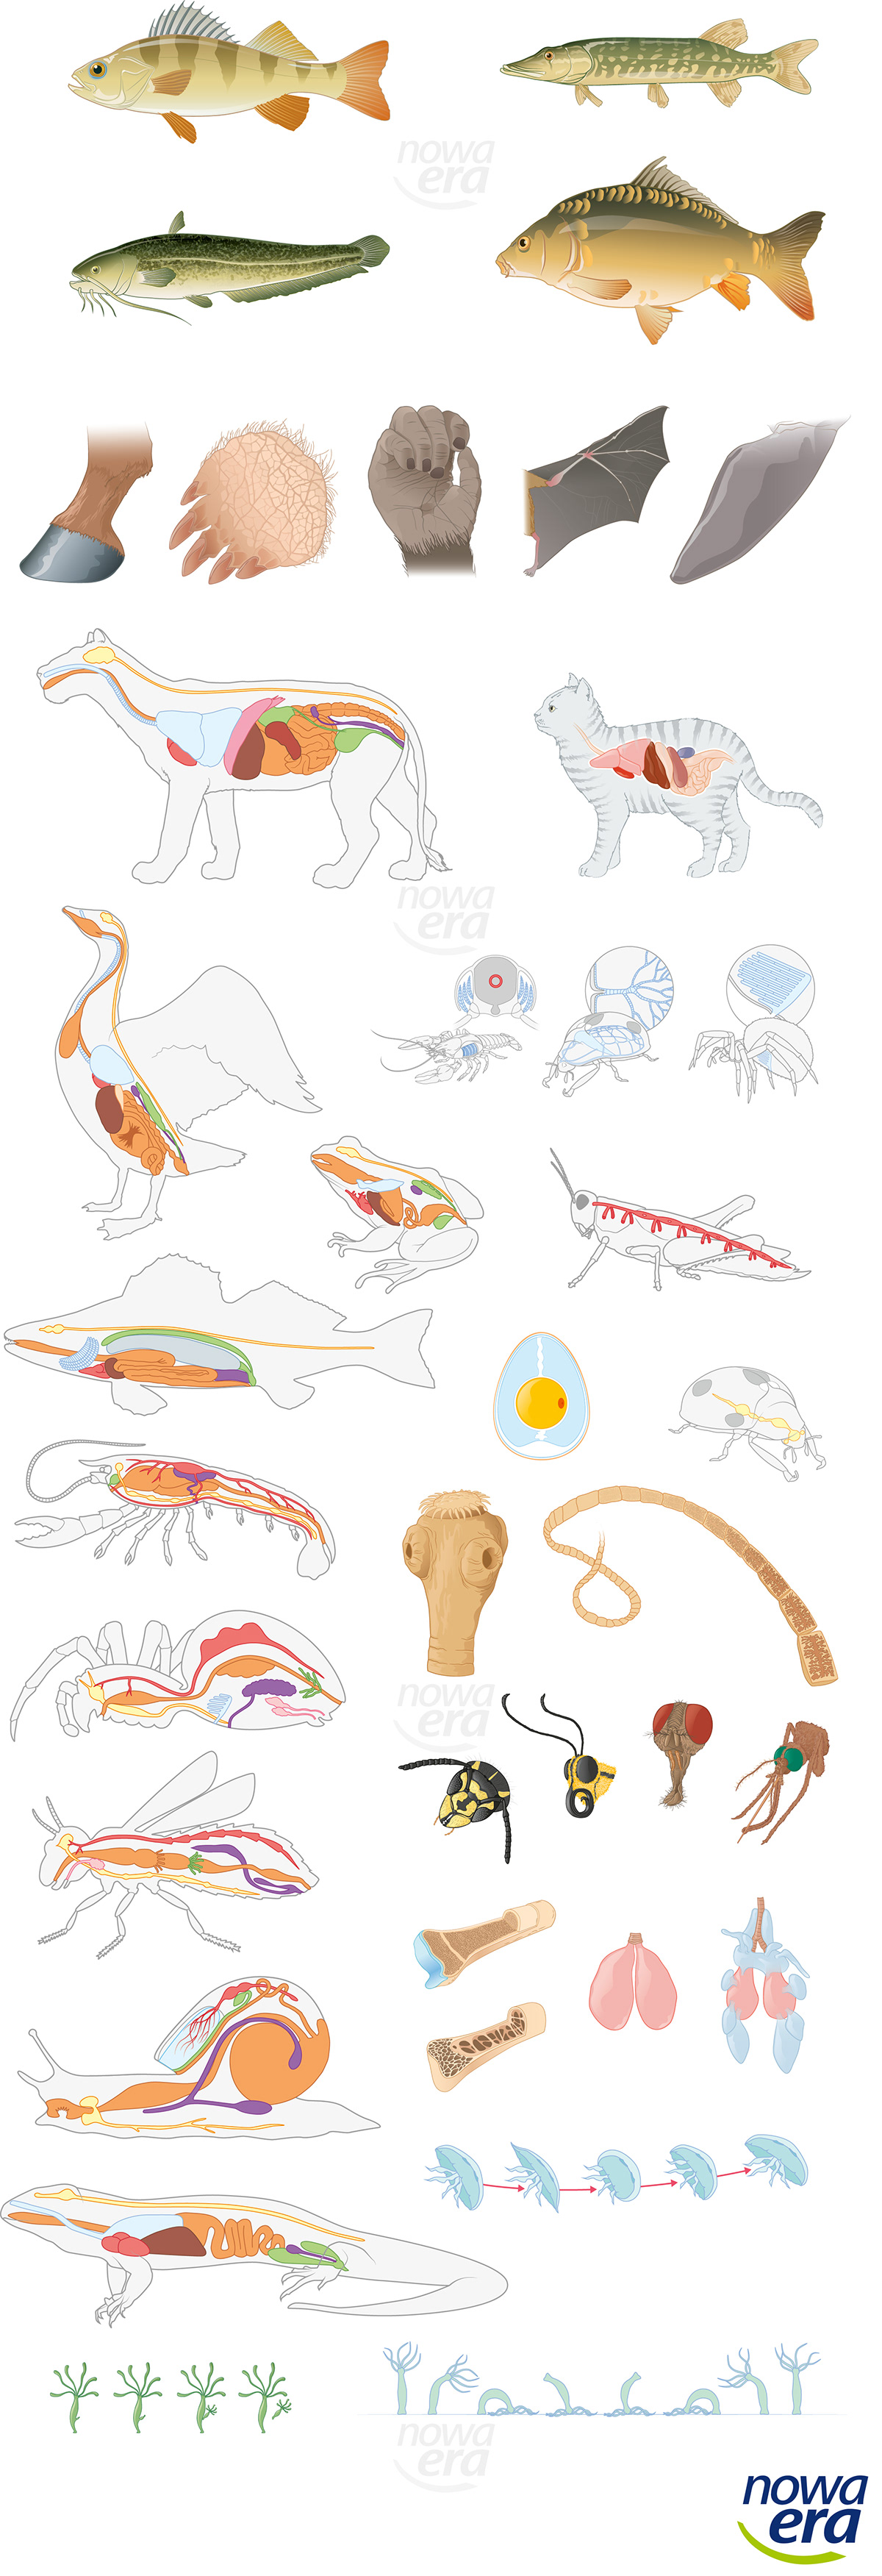 vector fish animal biology school ILLUSTRATION  Digital Art  adobe illustrator vectroillustration